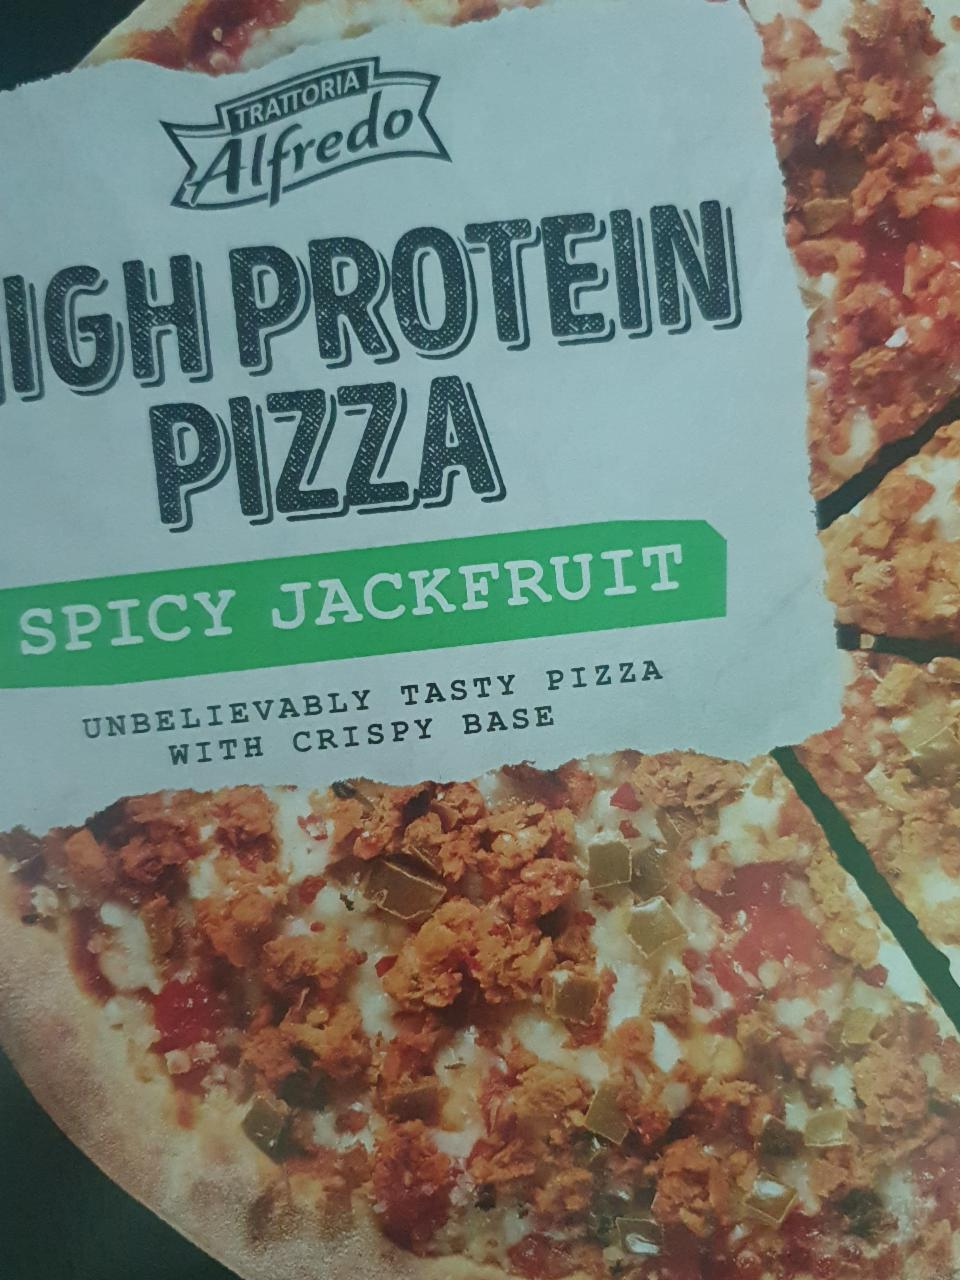 Fotografie - High Protein Pizza Spicy Jackfruit Trattoria Alfredo